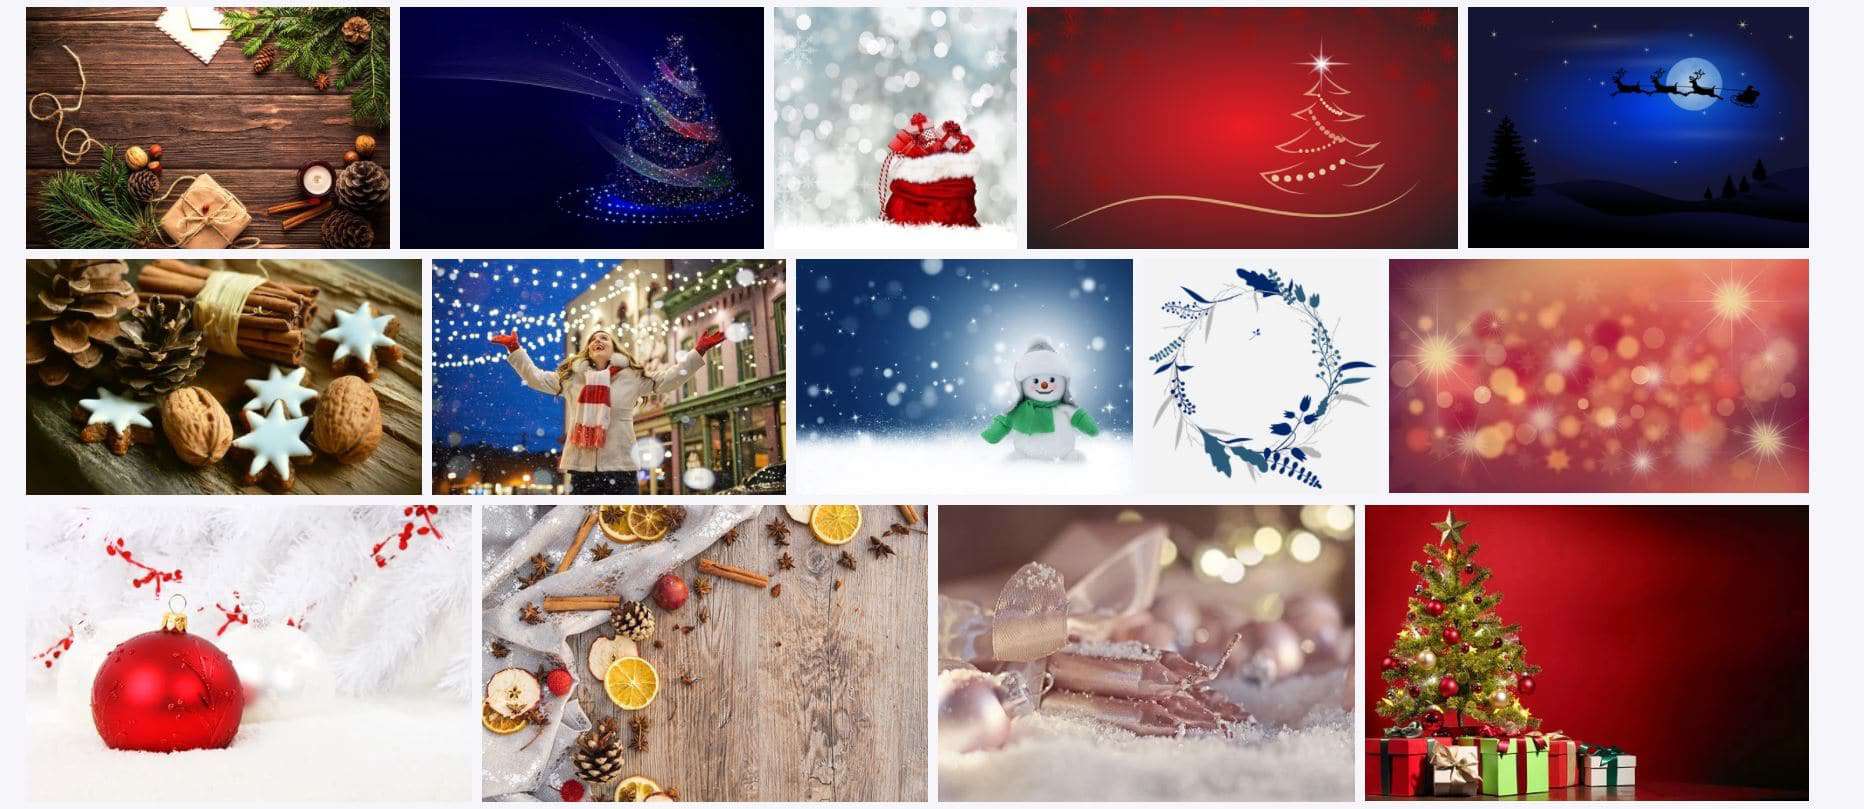 Saiba onde encontrar os melhores GIFs e imagens de Natal - Olhar Digital